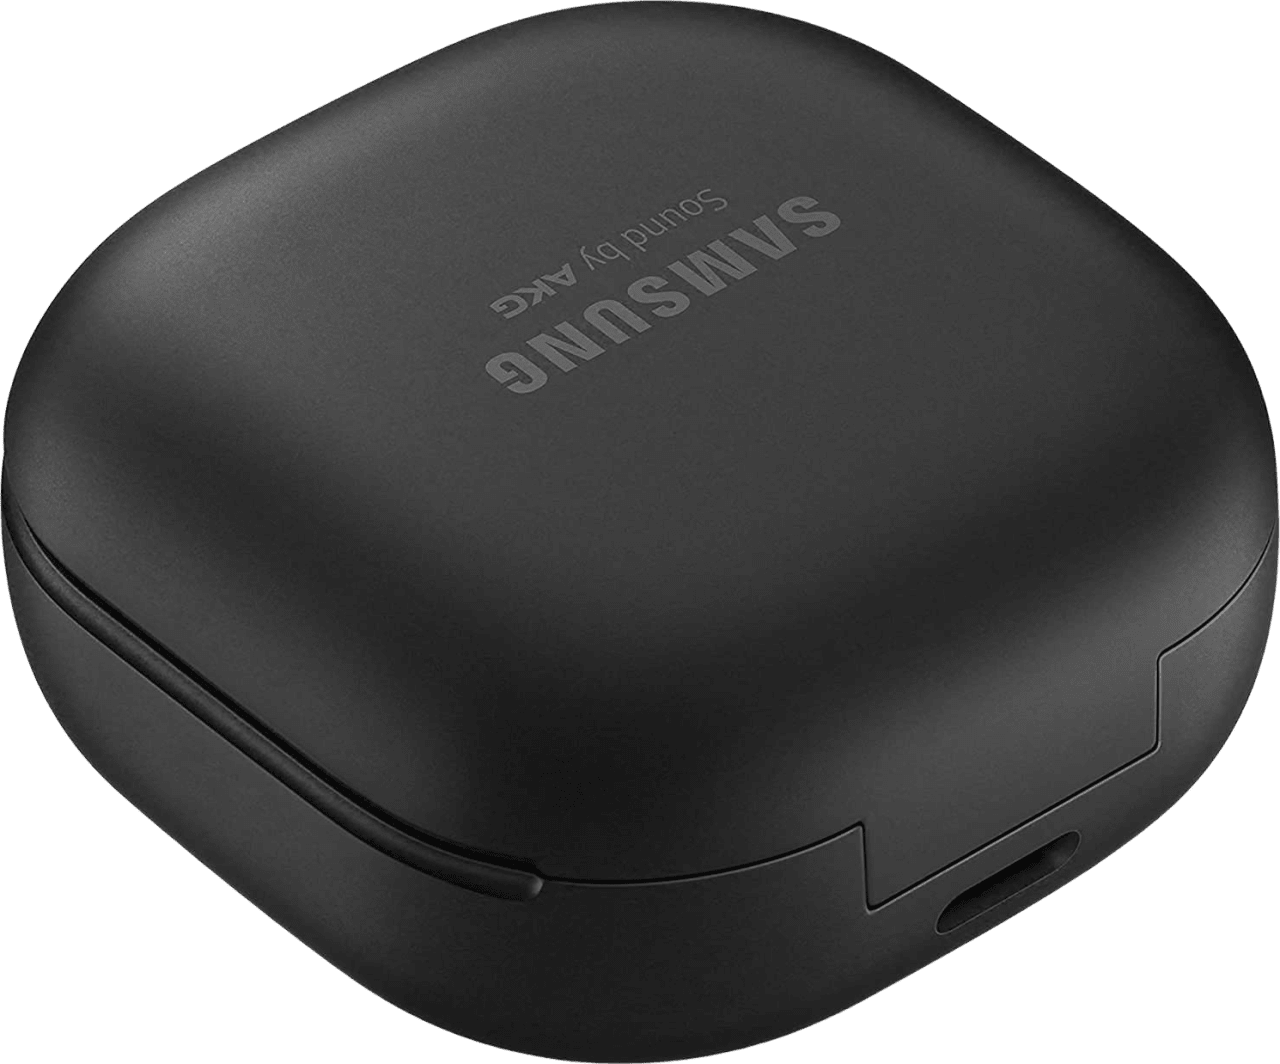 Negro Auriculares inalámbricos - Samsung Galaxy Buds Pro - Bluetooth - True Wireless - Cancelación de ruido.4